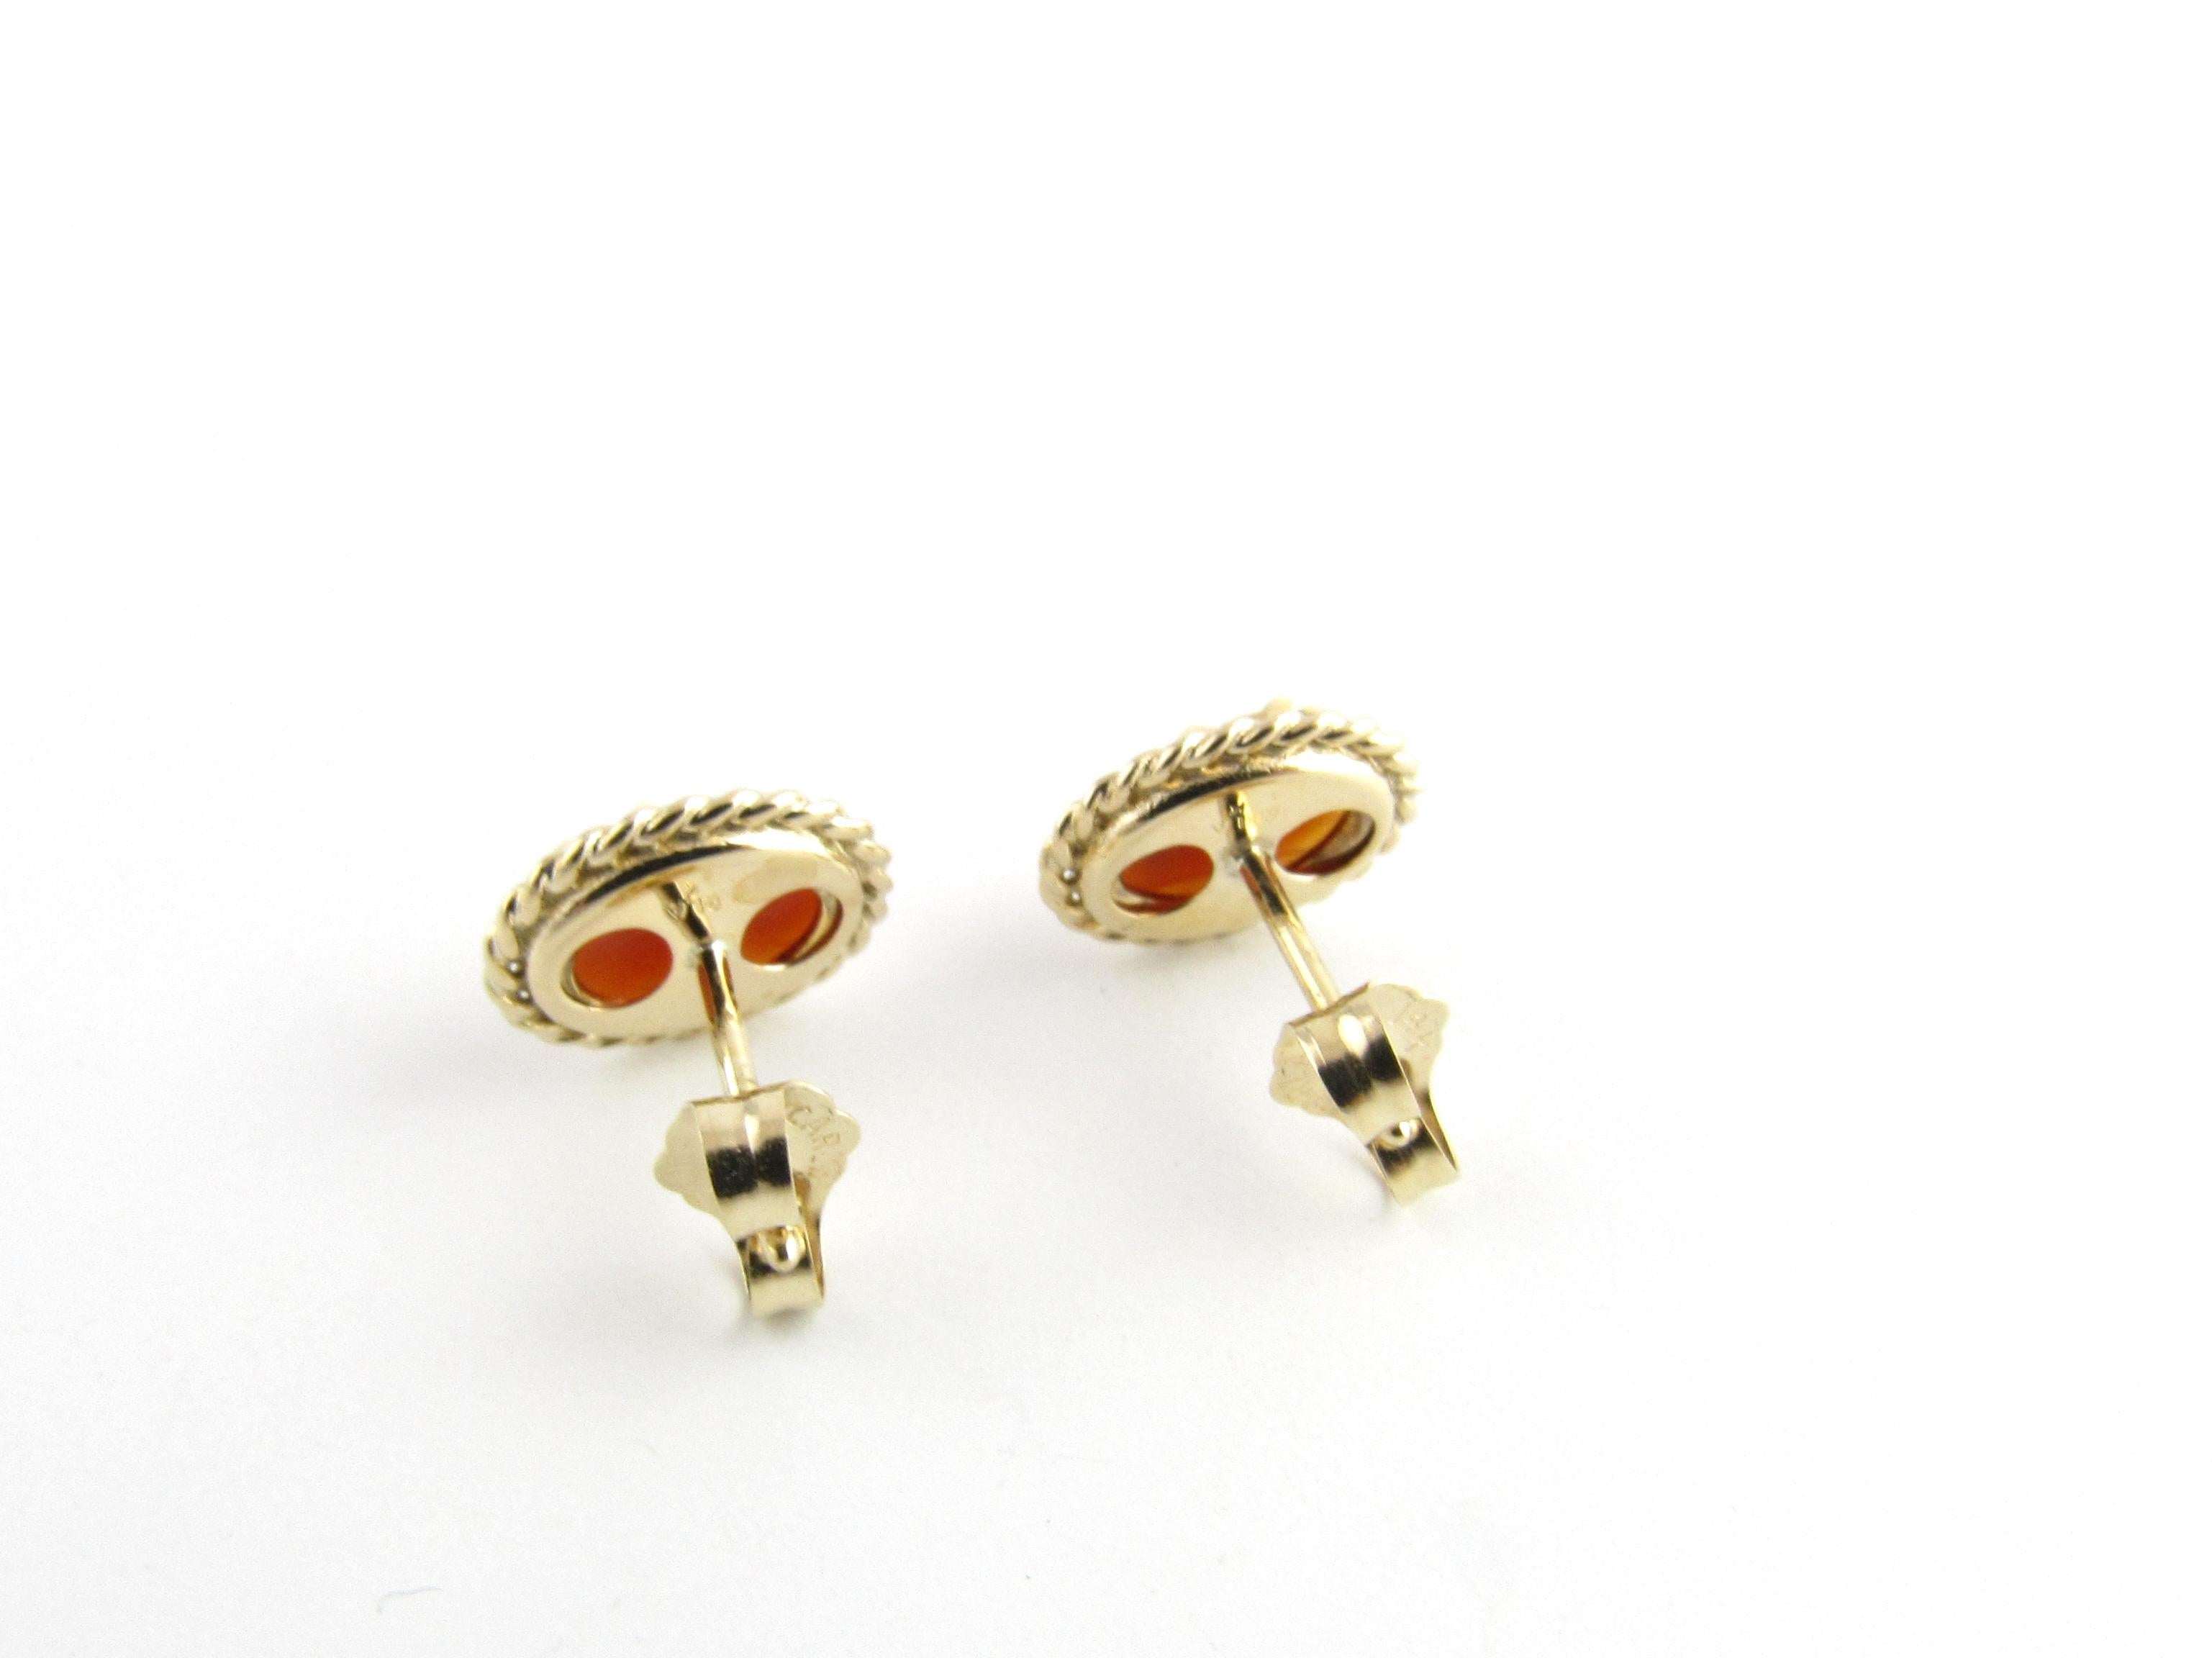 14k gold cameo earrings